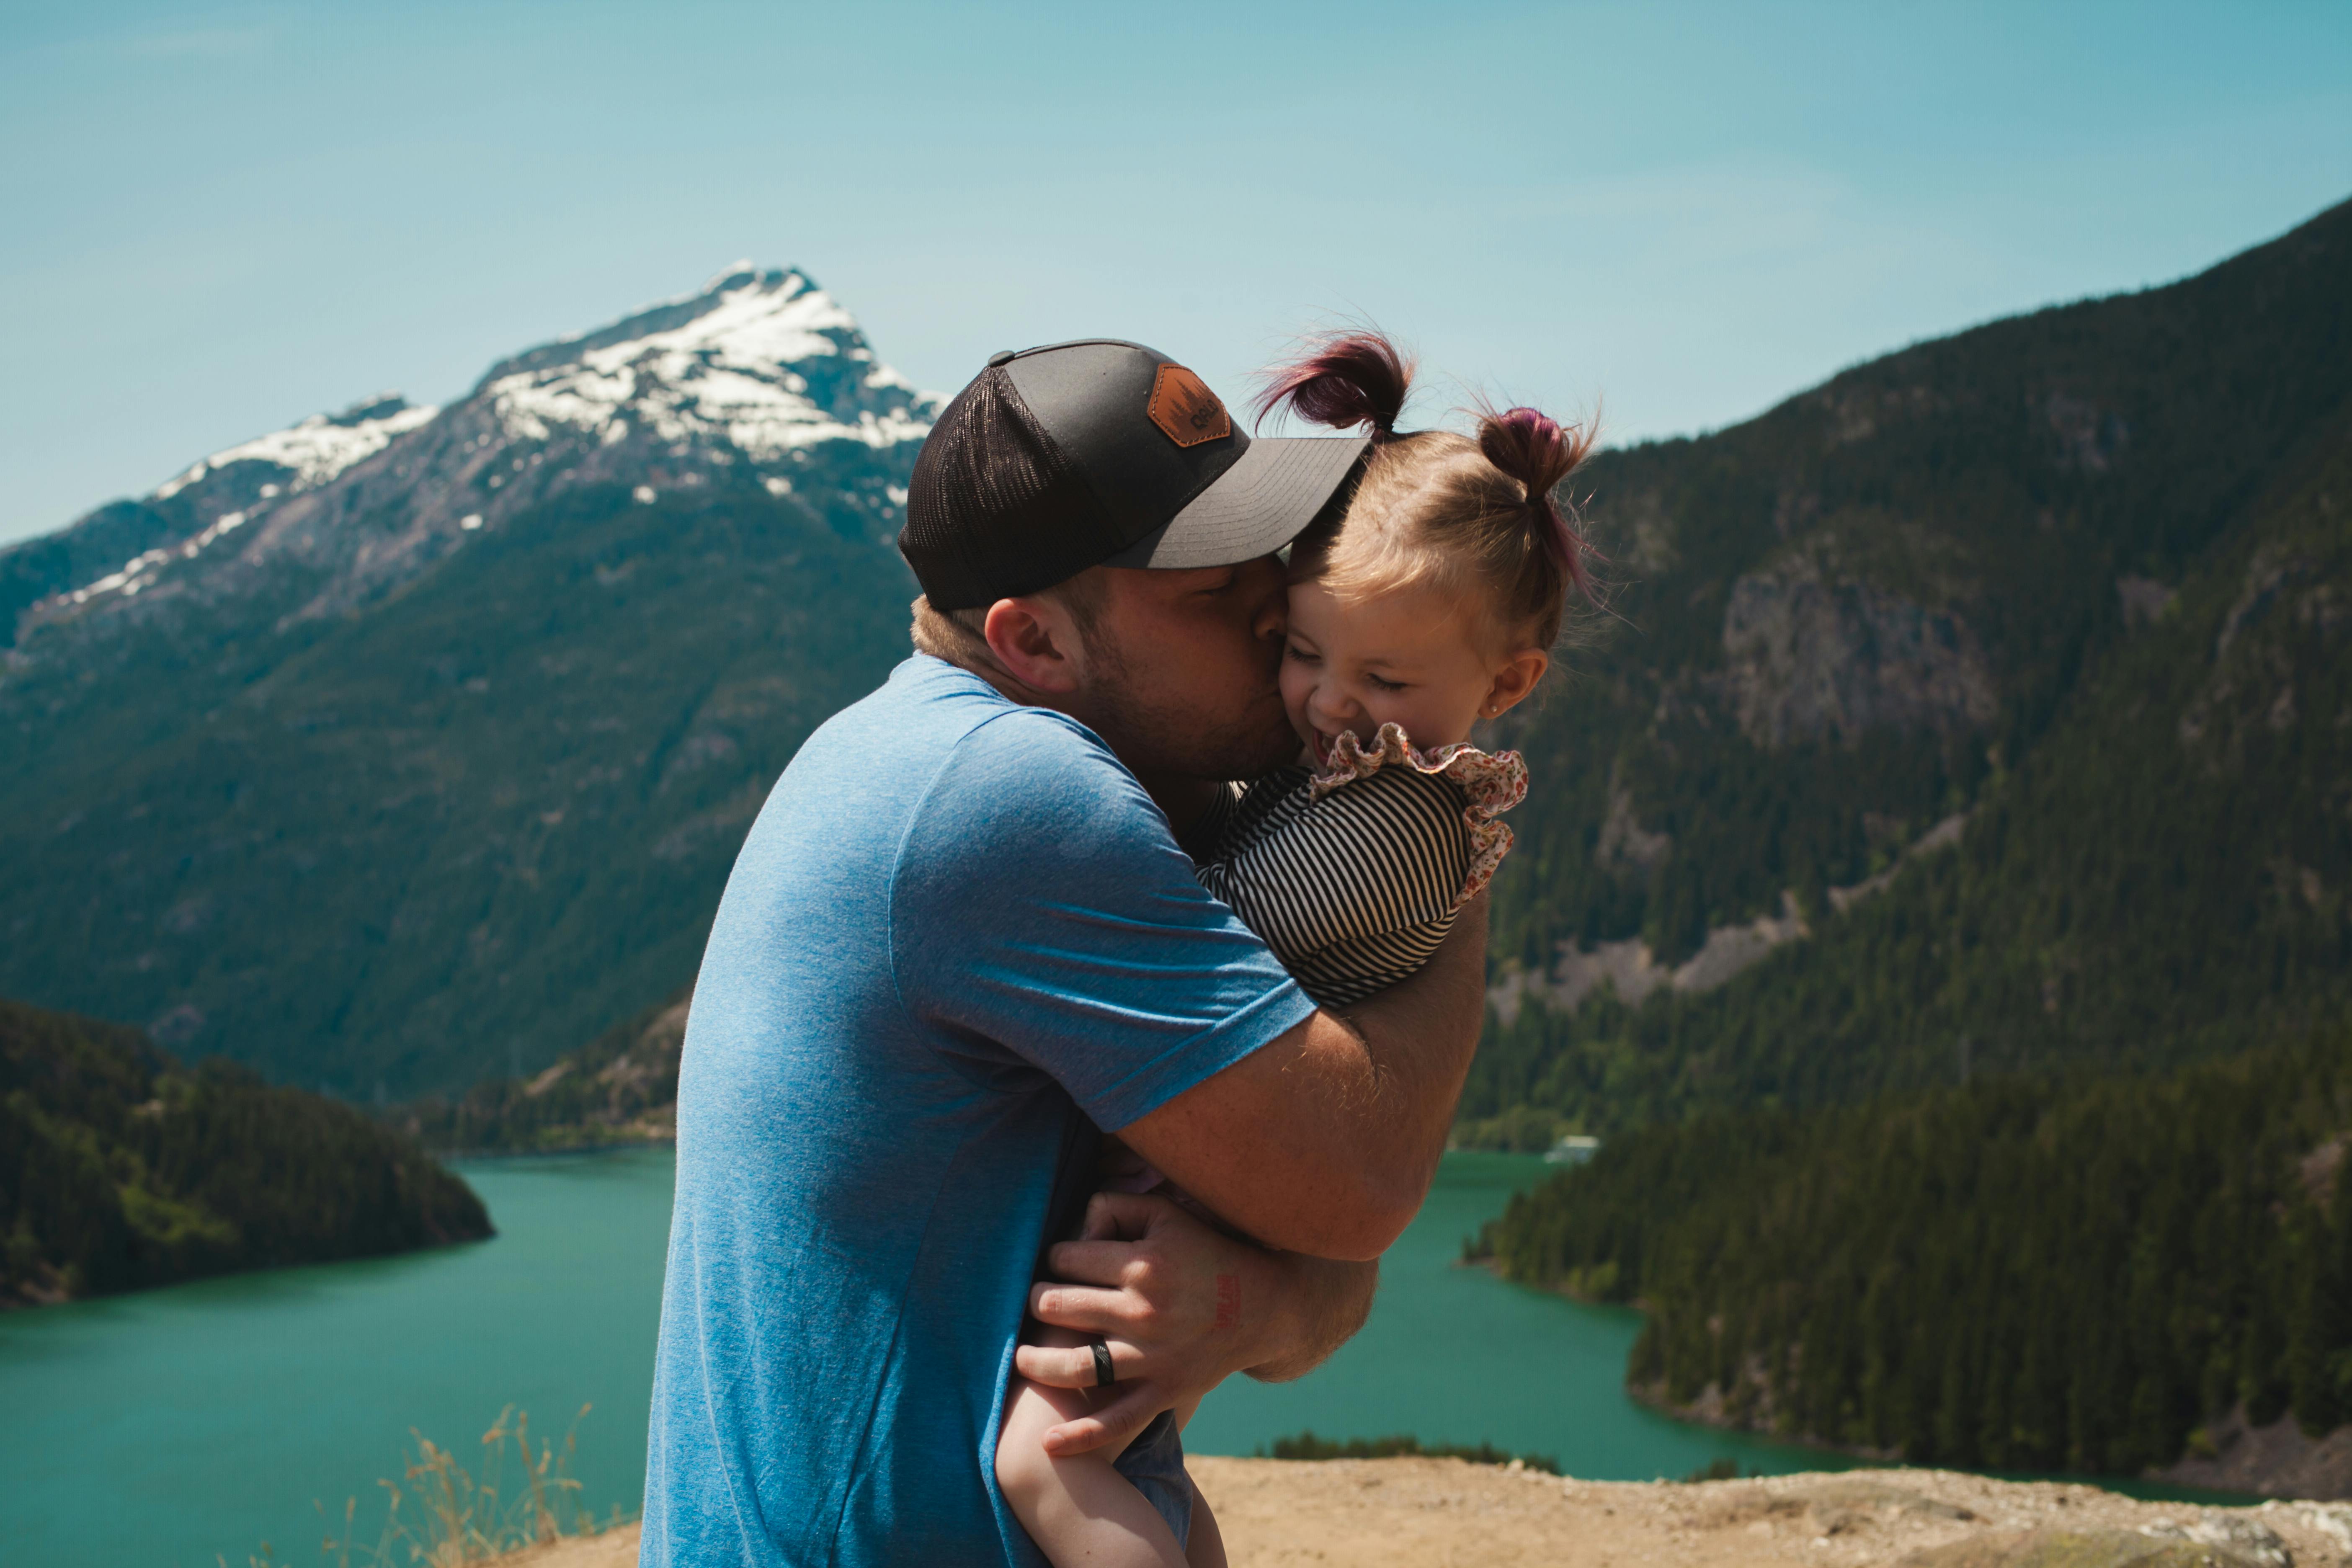 Mann hält kleines Mädchen im Arm und küsst sie auf die Wange im Freien | Quelle: Pexels